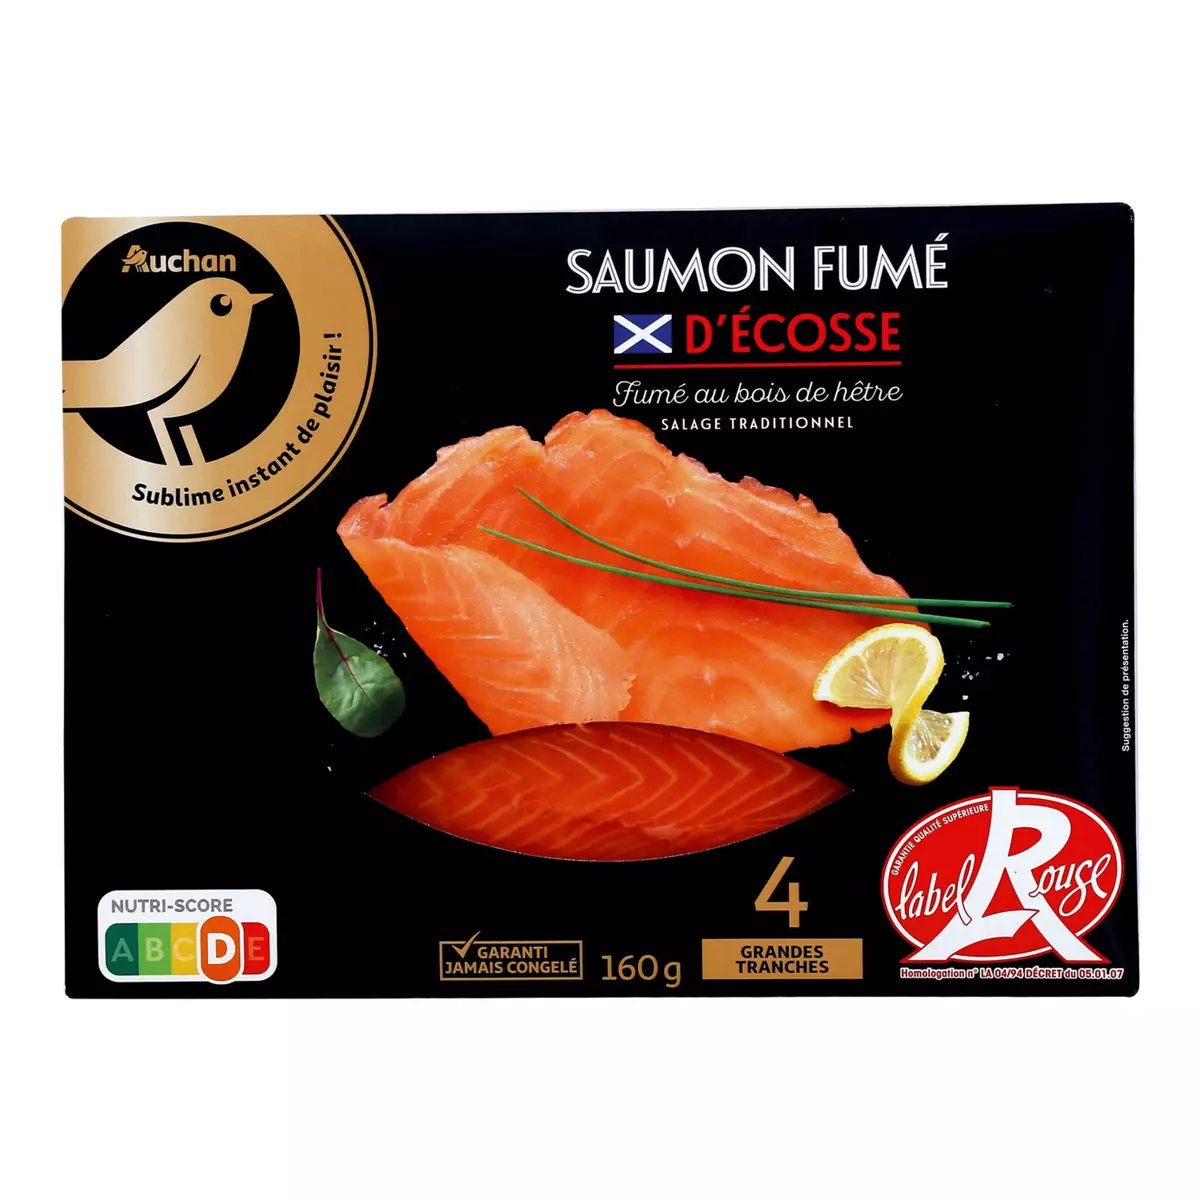 Saumon fumé - Label Rouge